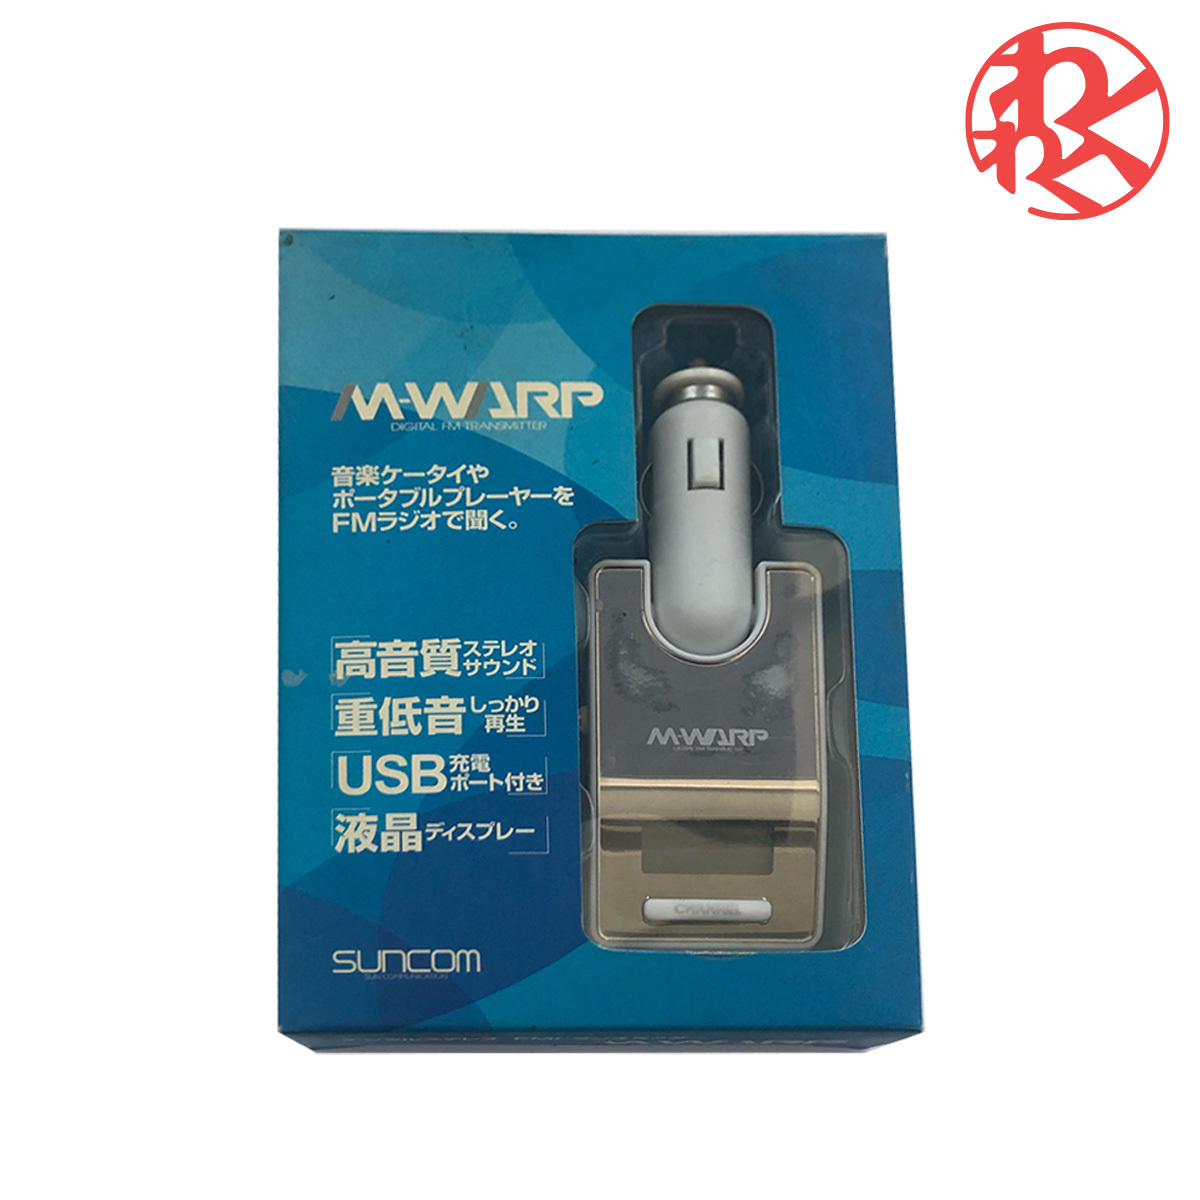 HPM-301W FMトランスミッター M301 ホワイト FMラジオ iPod iPhone オーディオプレーヤー MD 3.5ミニピンジャック 電池不要 M-WARP_画像1